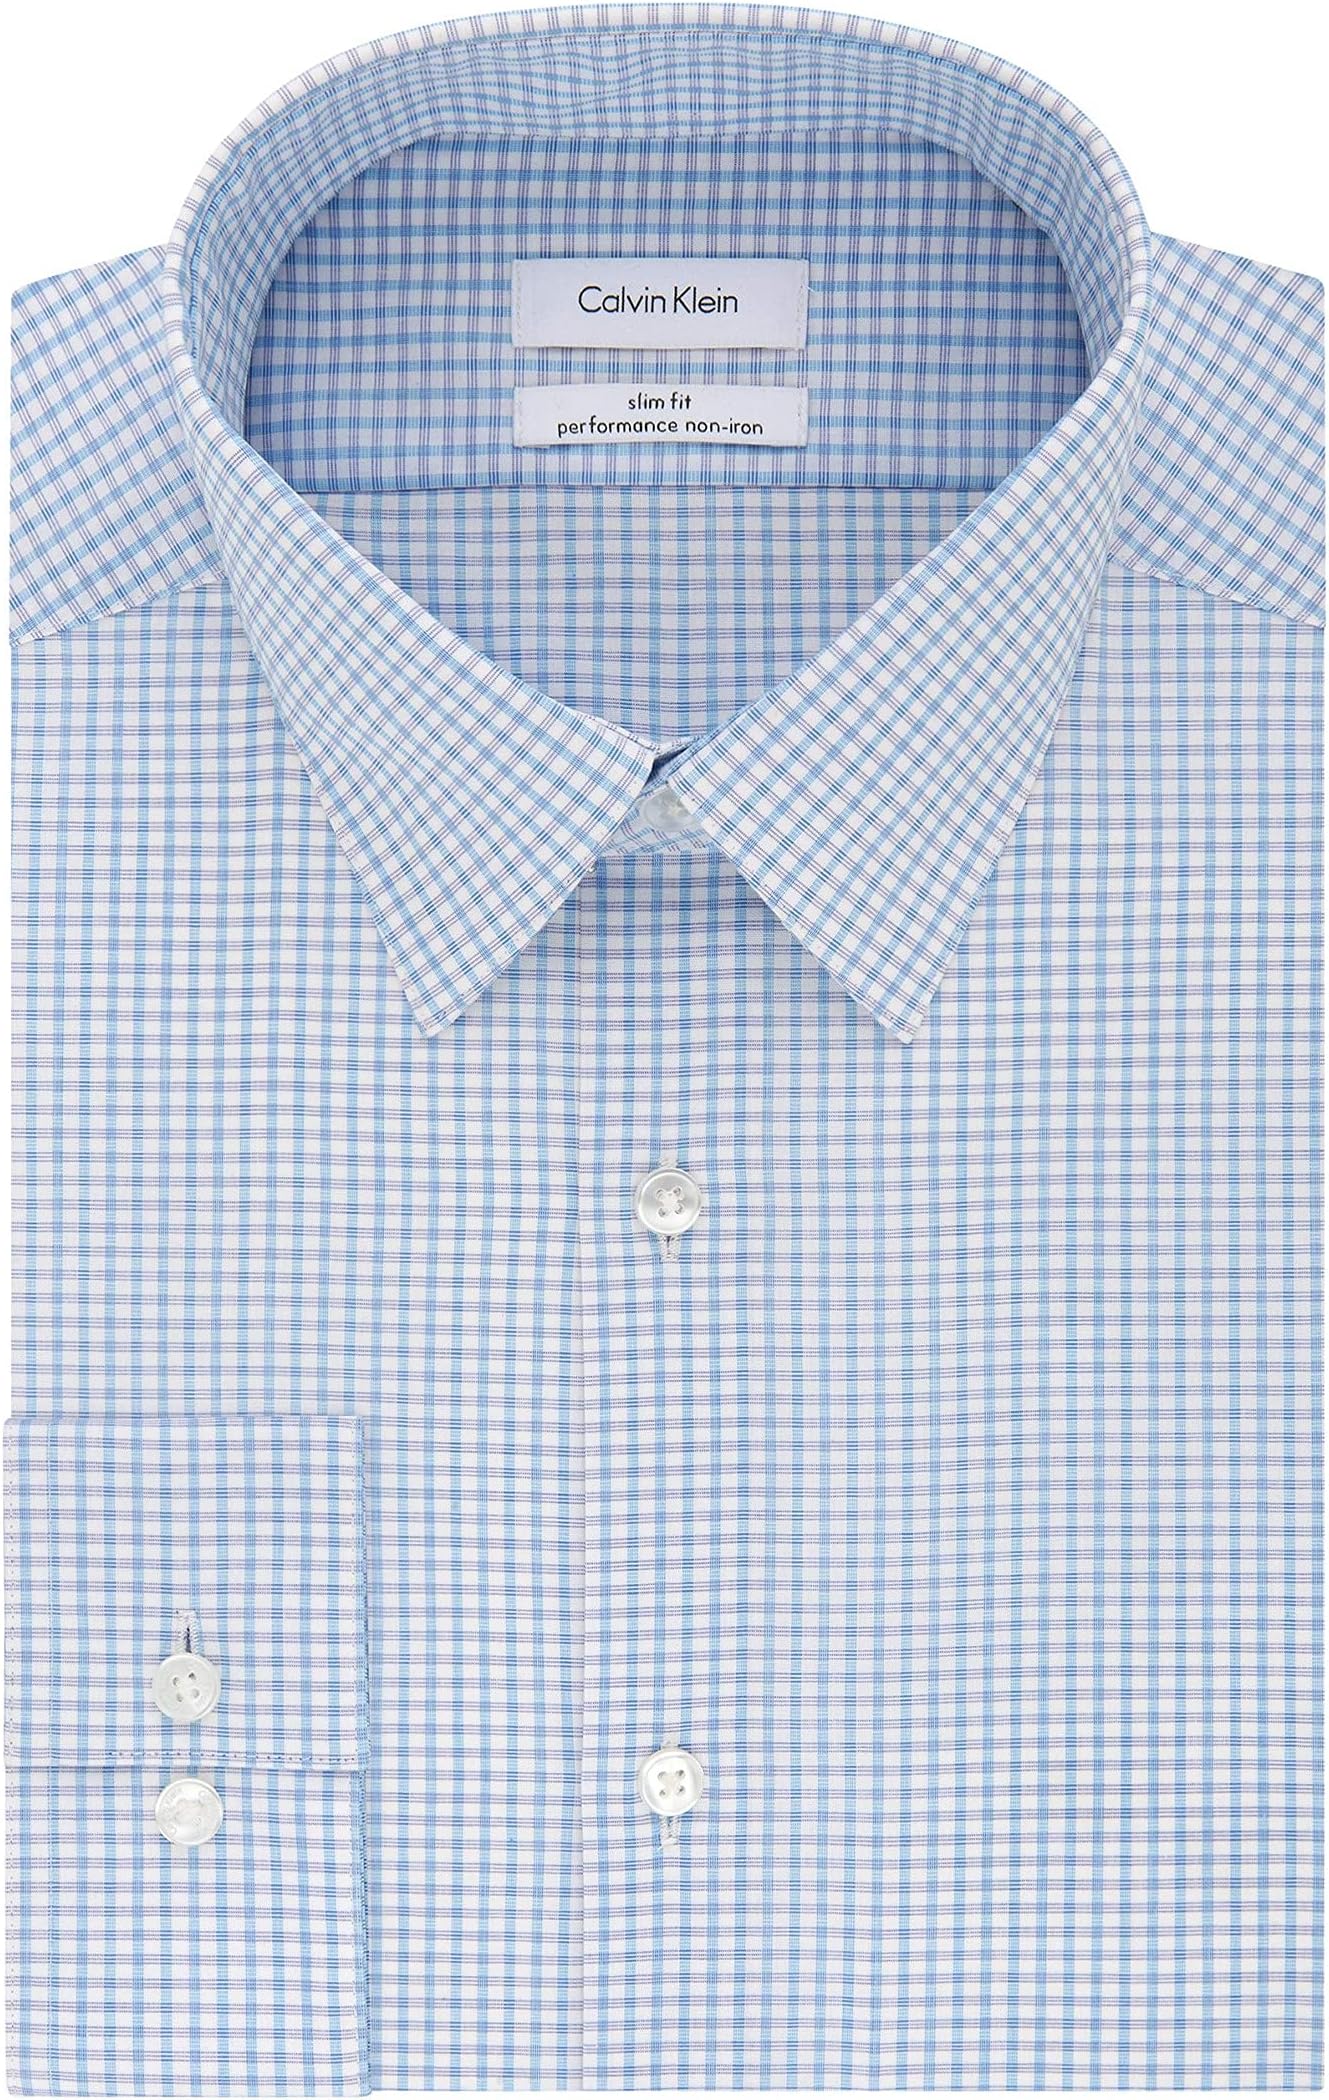 Мужская классическая рубашка без утюга стрейч приталенного кроя в клетку Calvin Klein, цвет Blue Bird